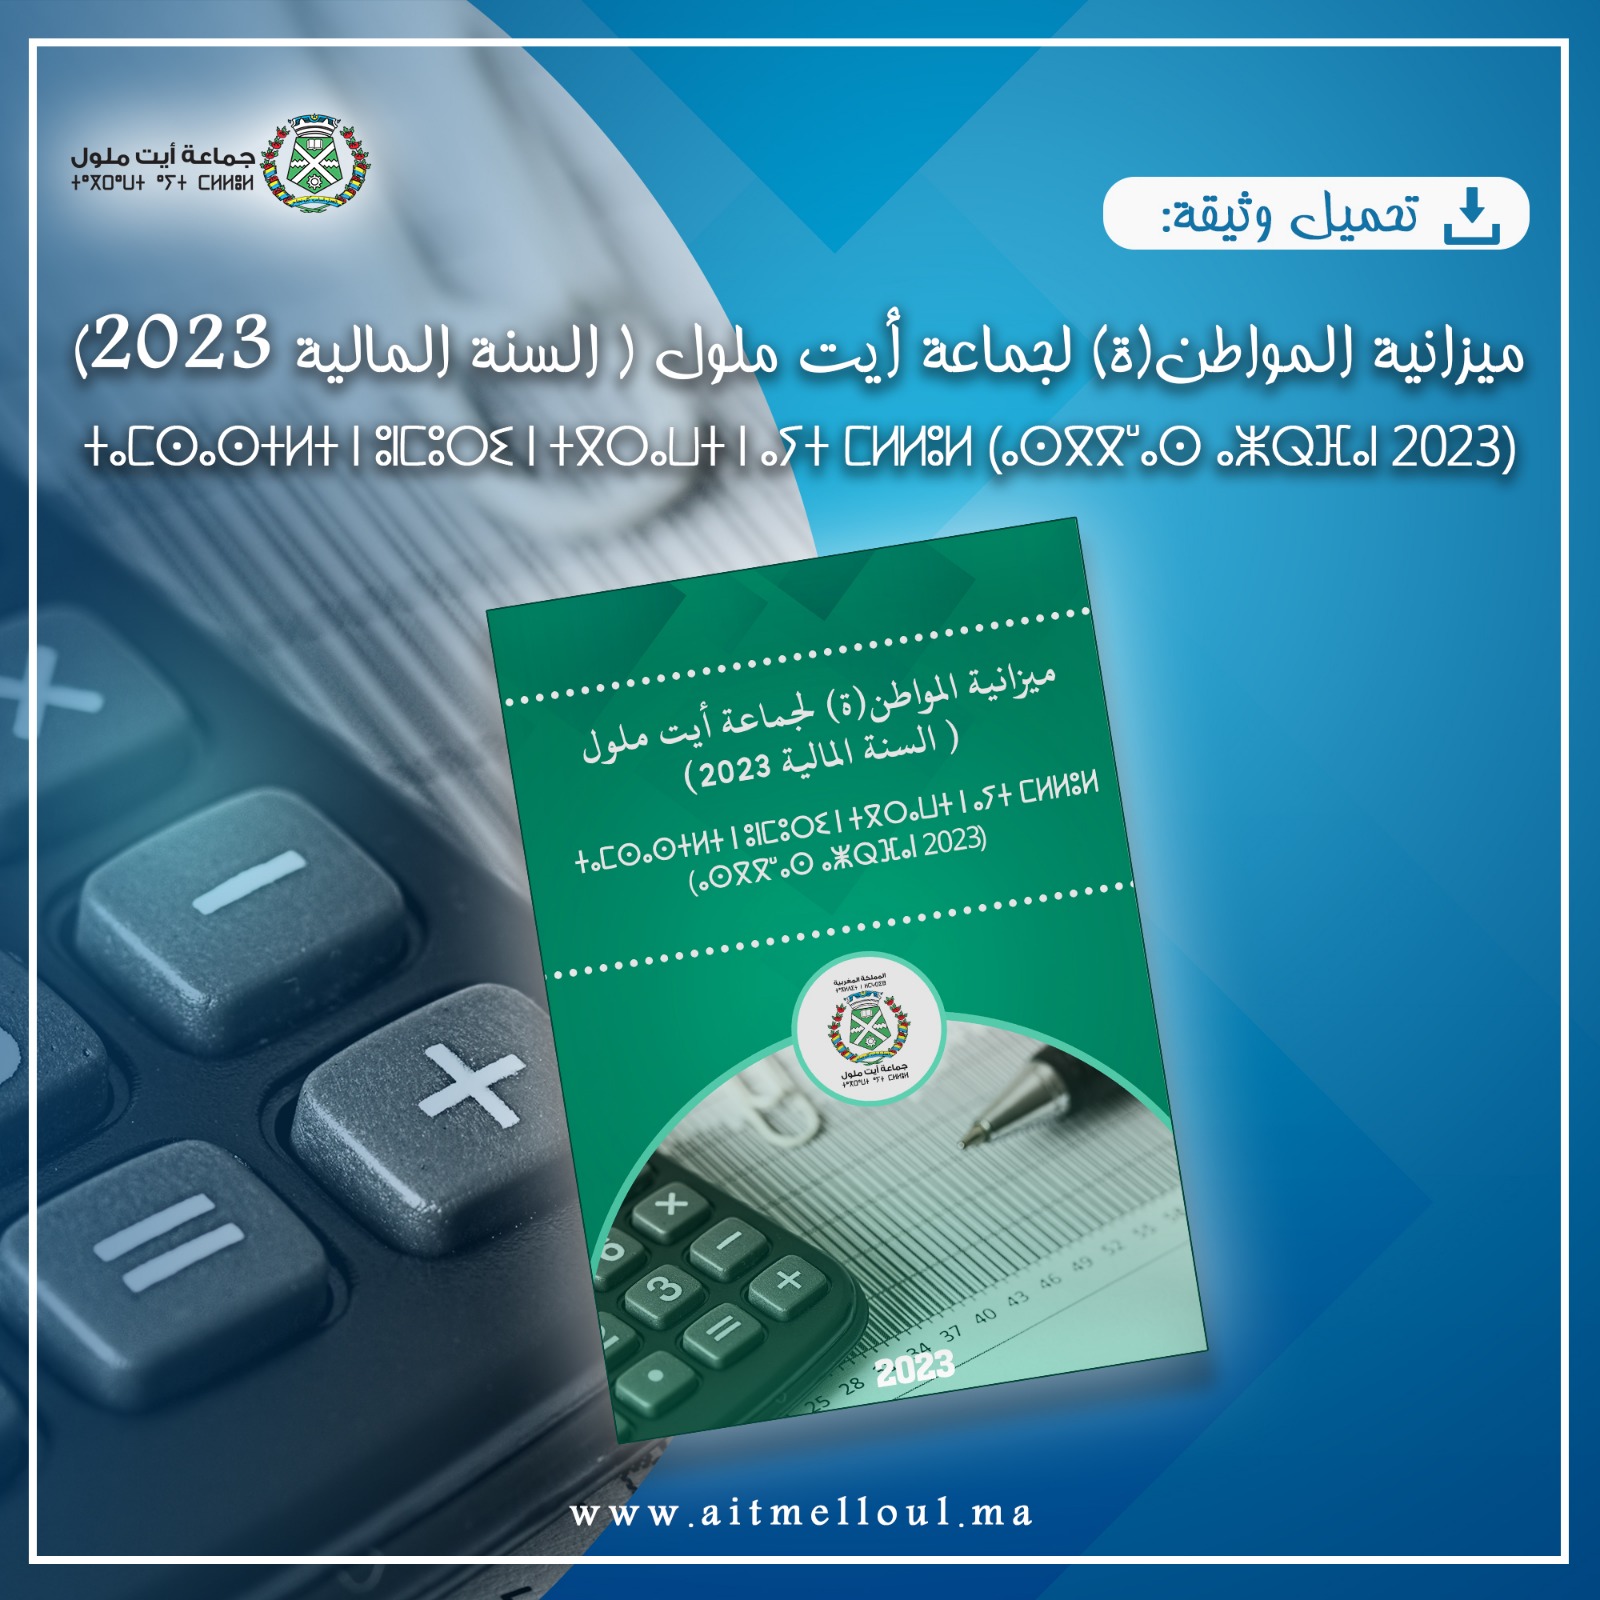 ميزانية المواطن (ة) لجماعة أيت ملول (السنة المالية 2023)